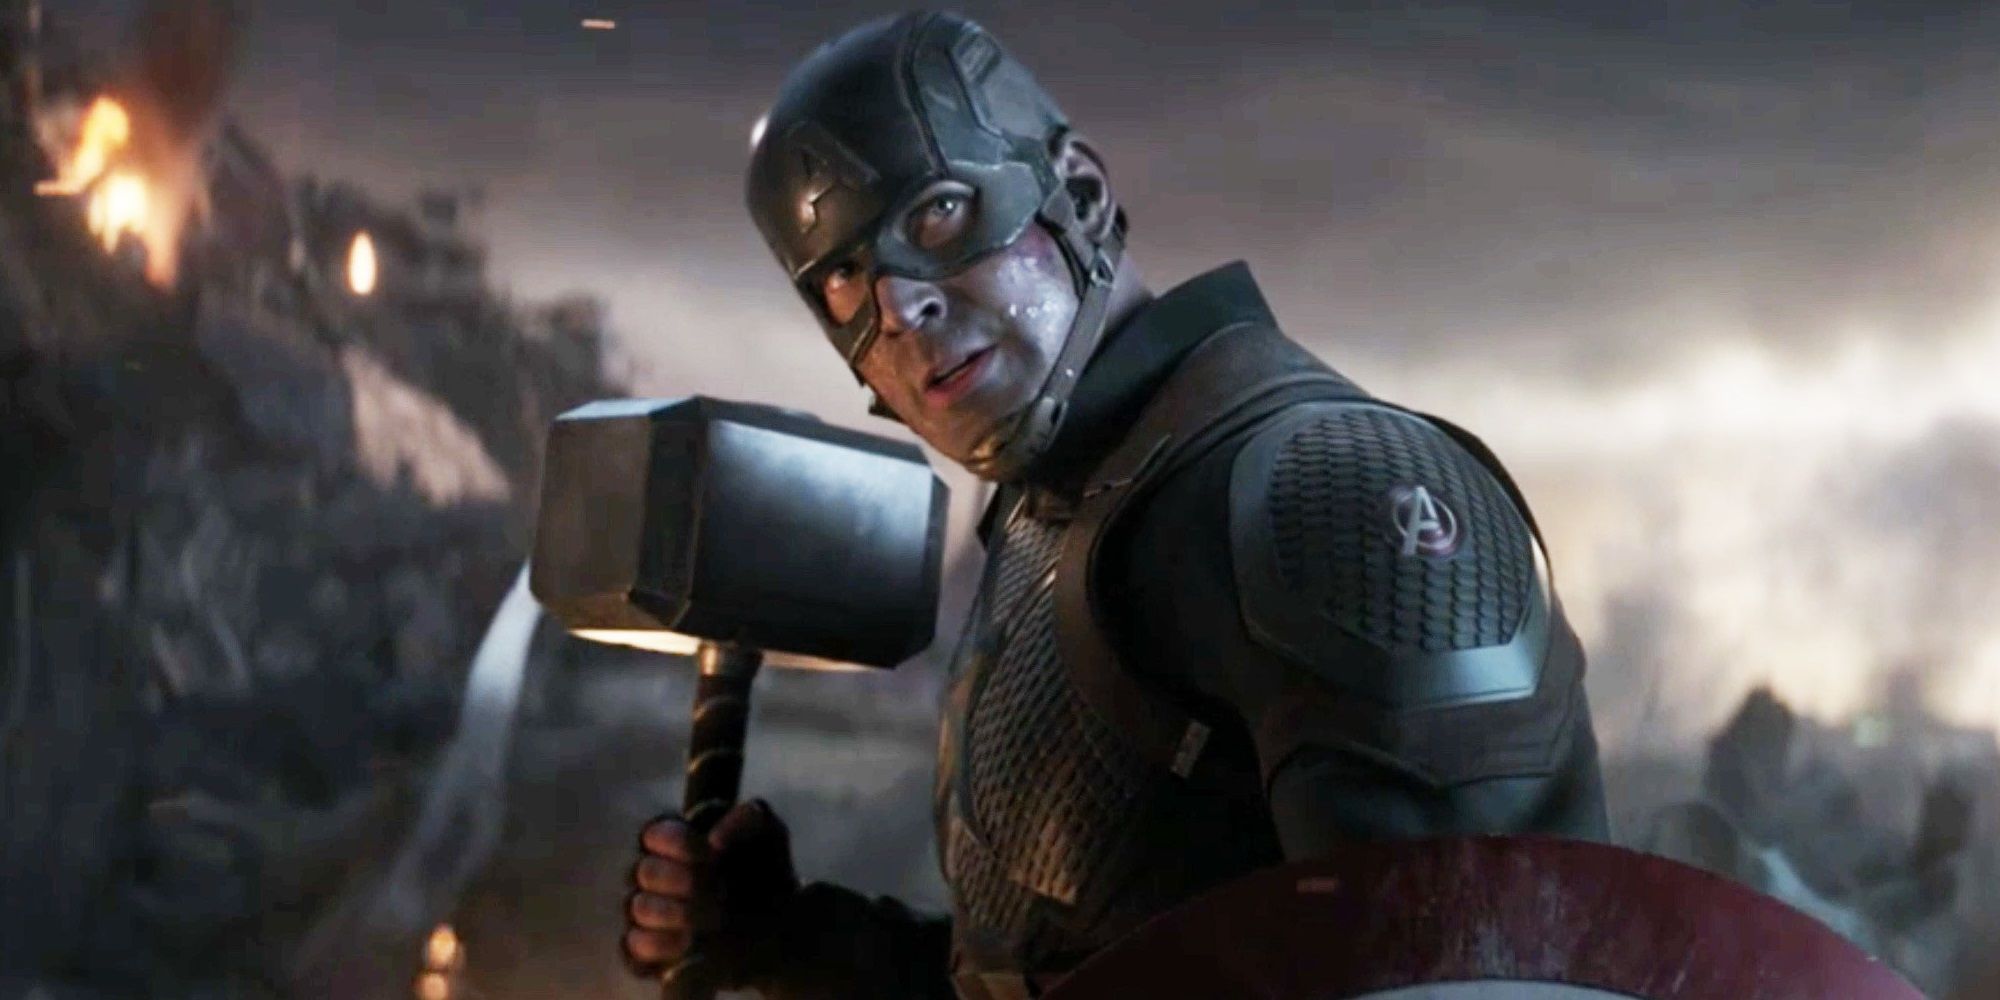 Steve Rogers holding Mjolnir in Avengers Endgame